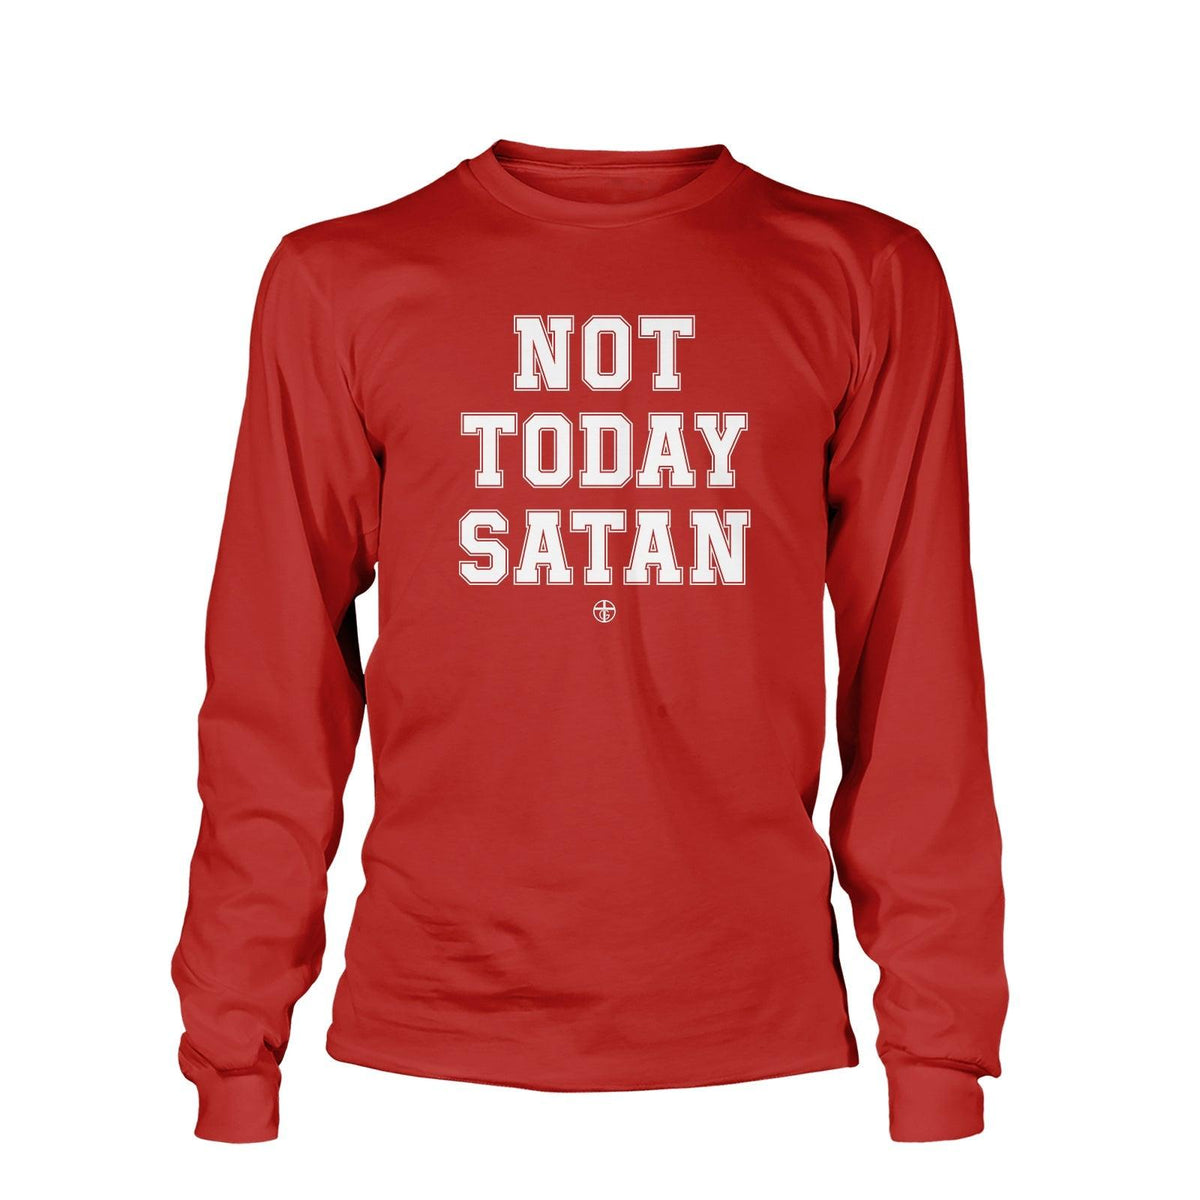 Not Today Satan Long Sleeve T-Shirt